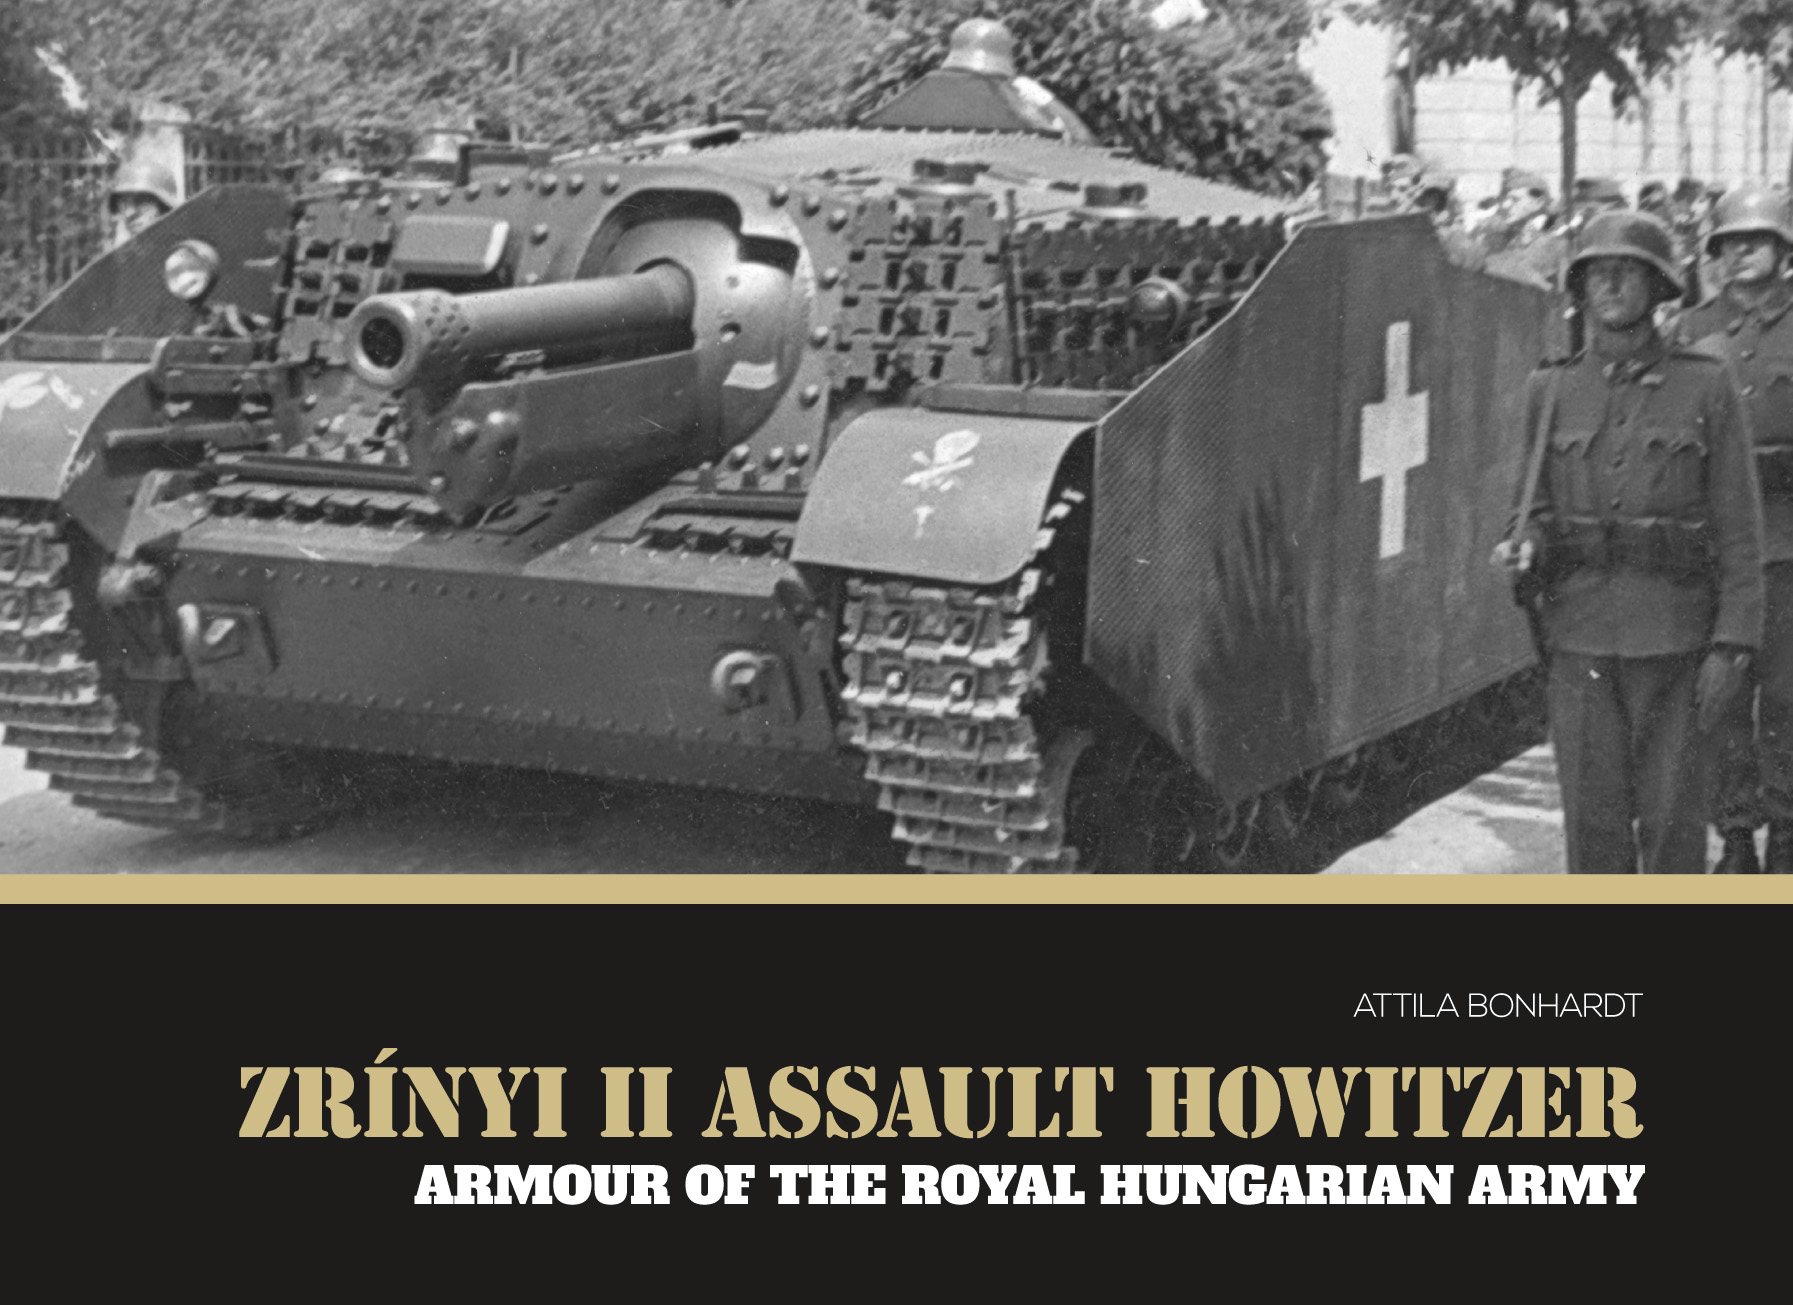 ズリーニィ II 自走砲 ロイヤルハンガリー軍の装甲車両